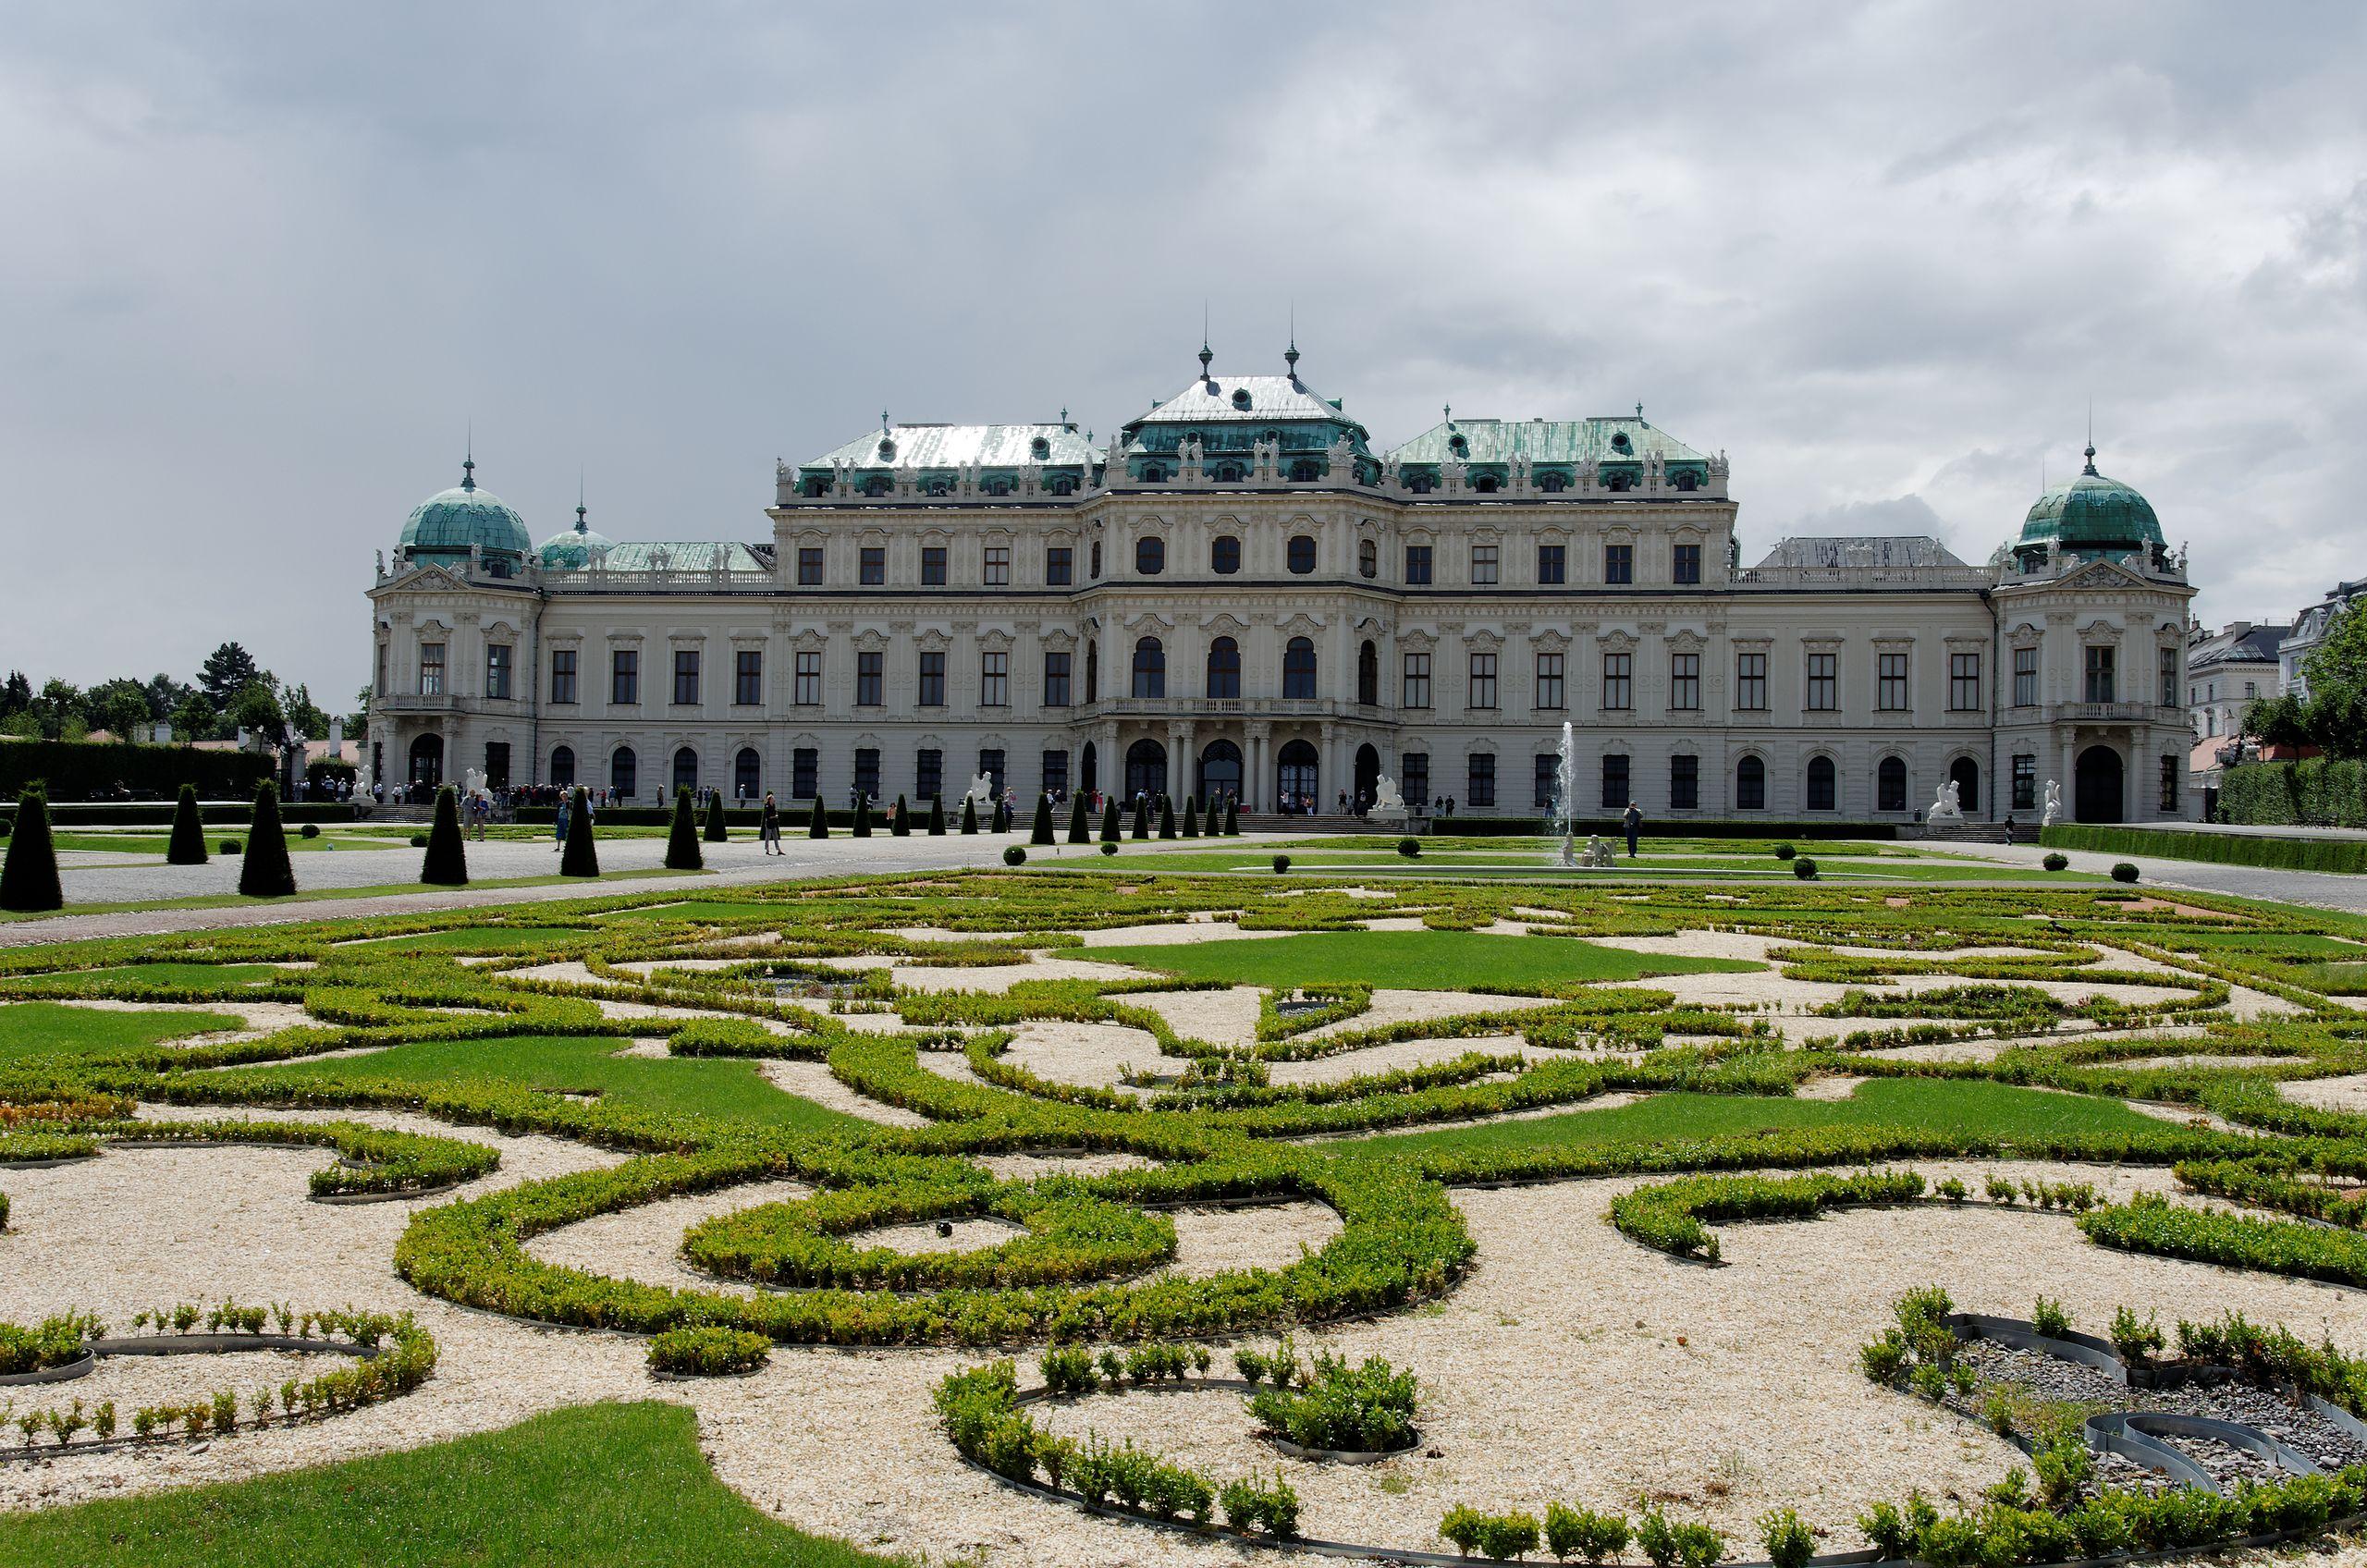 Οι κήποι και το επιβλητικό ανάκτορο Μπελβεντέρε της Βιέννης